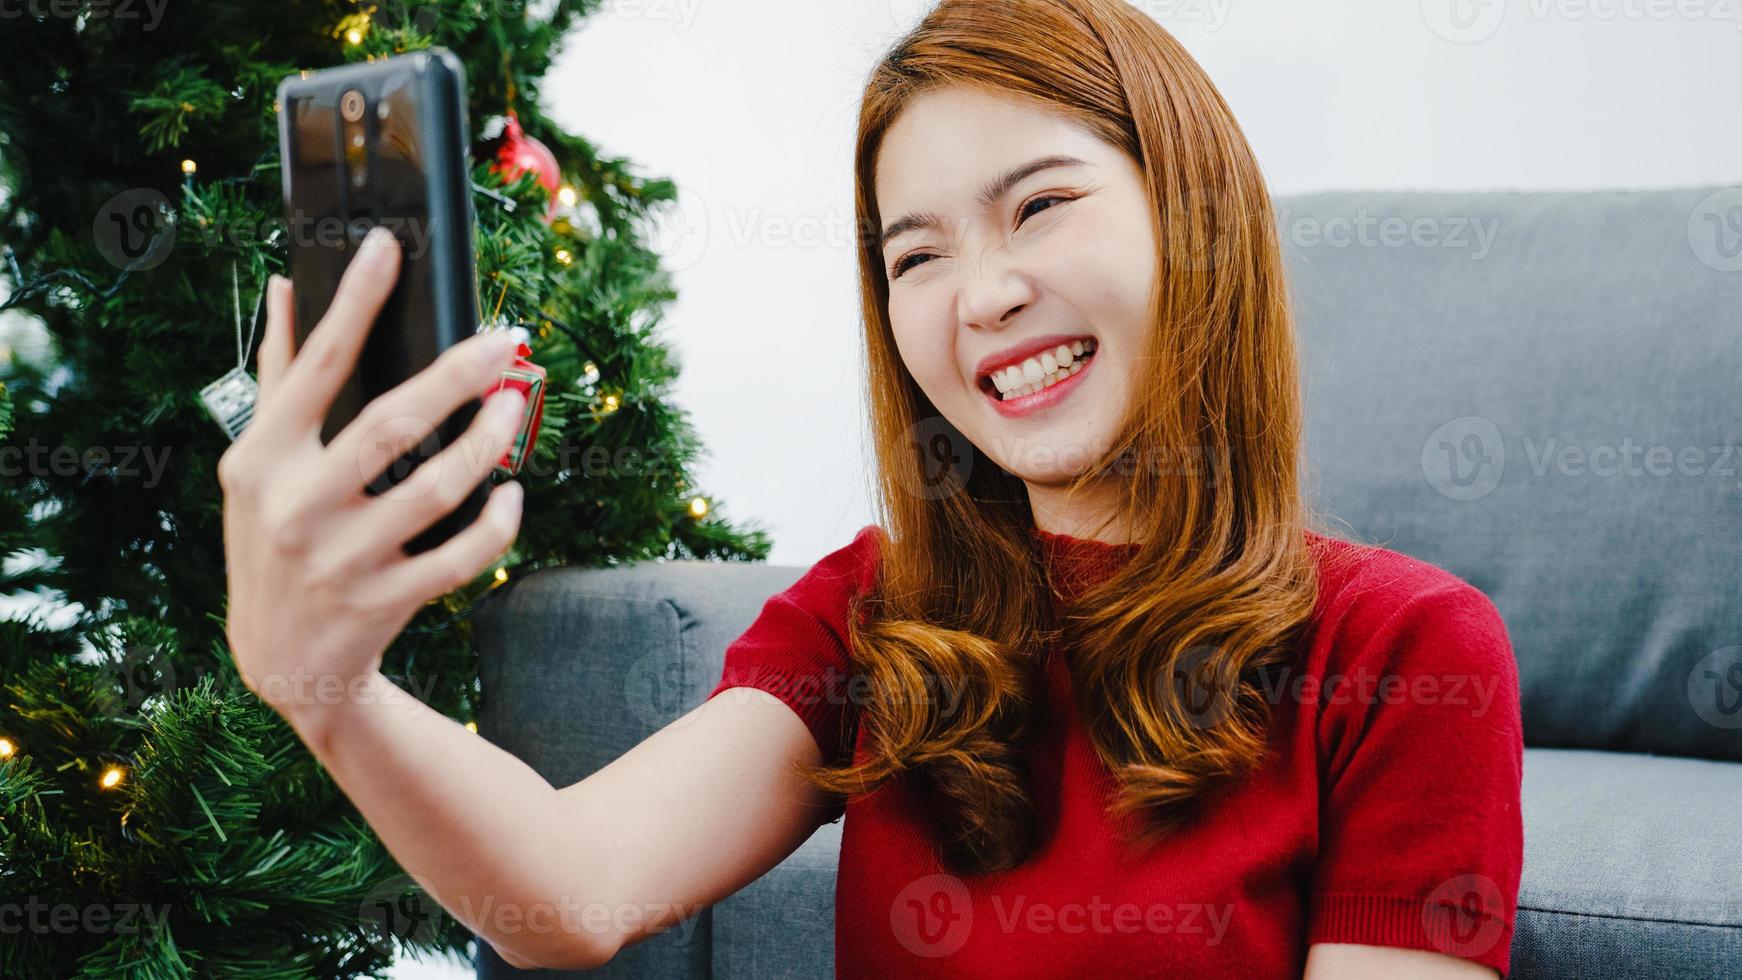 Junge asiatische Frau mit Smartphone-Videoanruf im Gespräch mit Paar mit Weihnachtsgeschenkbox, Weihnachtsbaum mit Ornament im Wohnzimmer zu Hause geschmückt. Weihnachts- und Neujahrsfest. foto